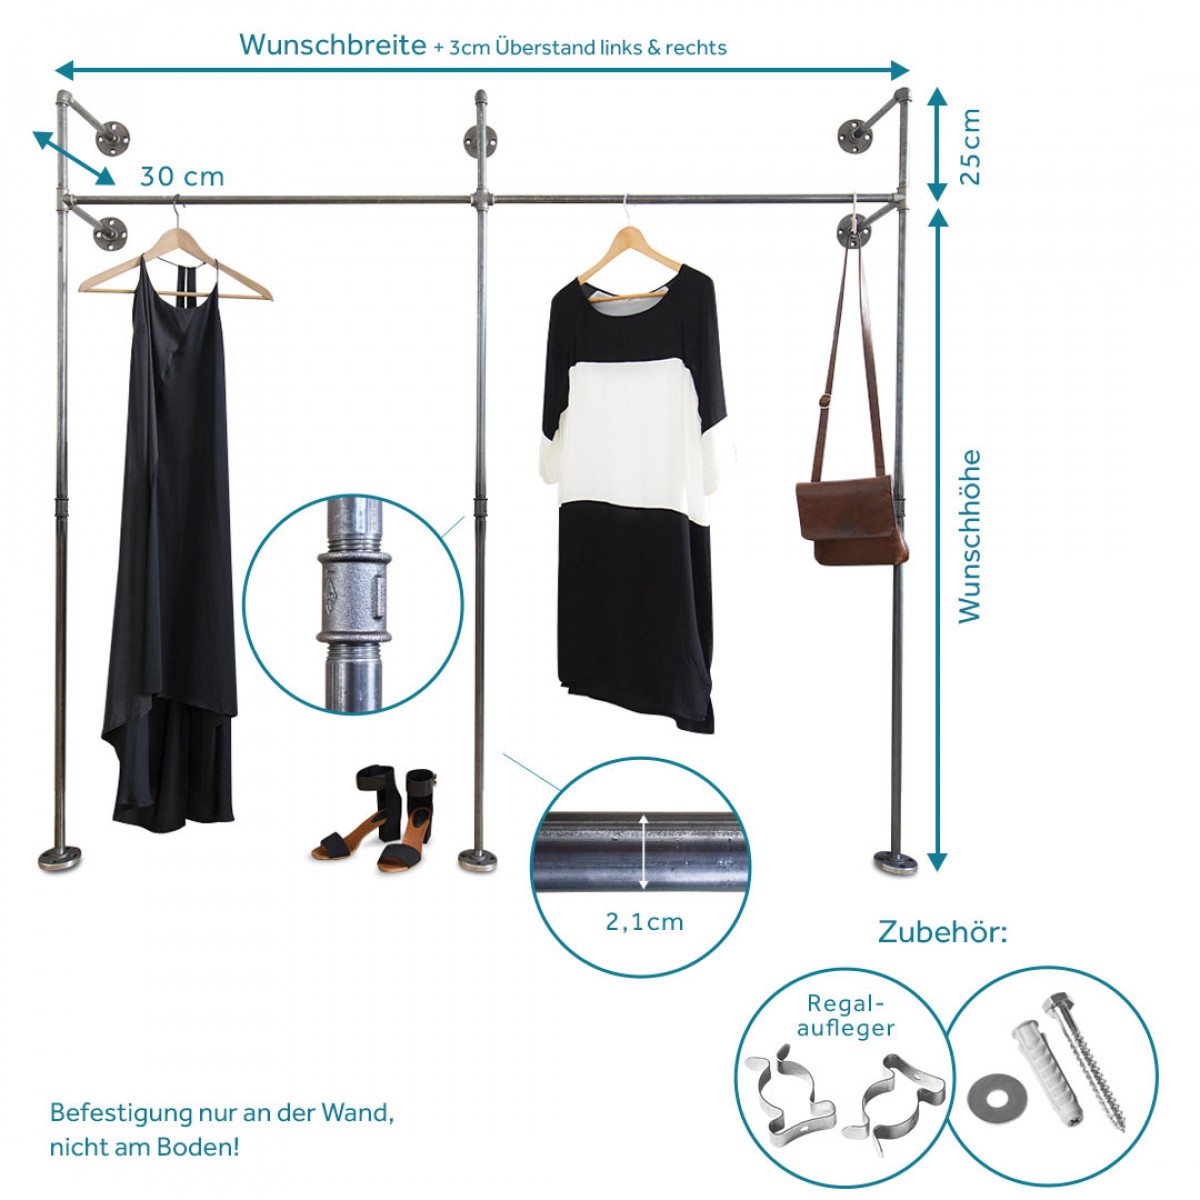 Industrial Design Garderobe & offenes Kleiderschranksystem in Wunschgröße - Kleiderständer für Wandmontage aus Wasserrohr DUO HIGH